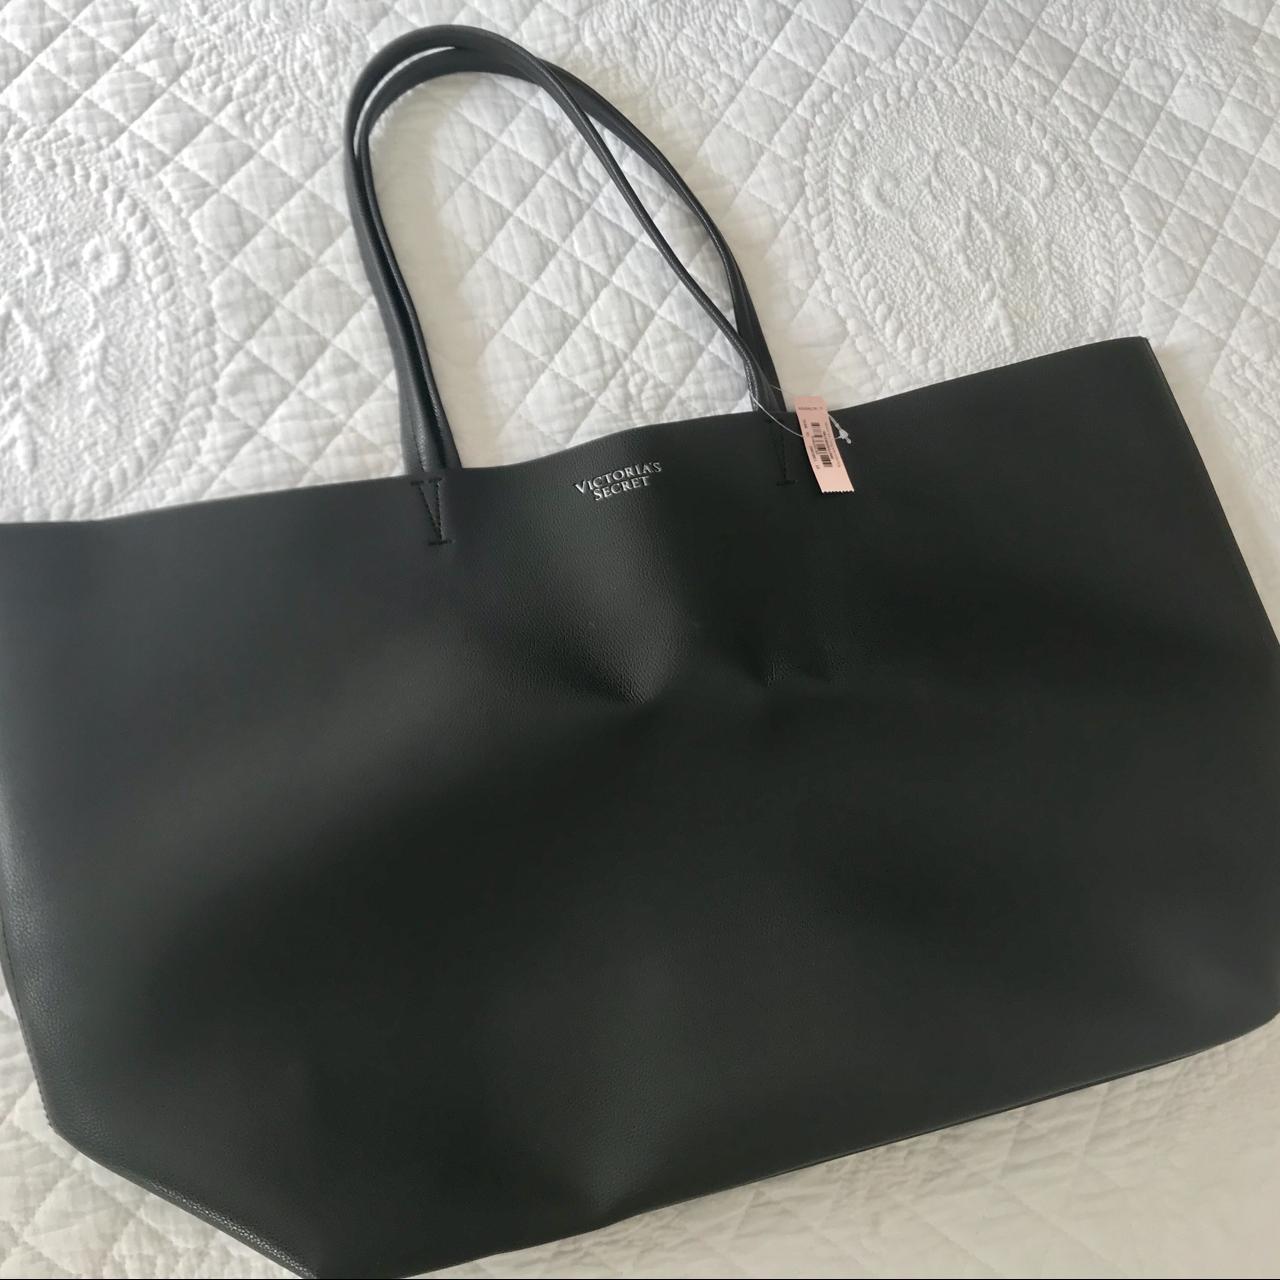 Victoria's Secret large black tote bag. Leather - Depop